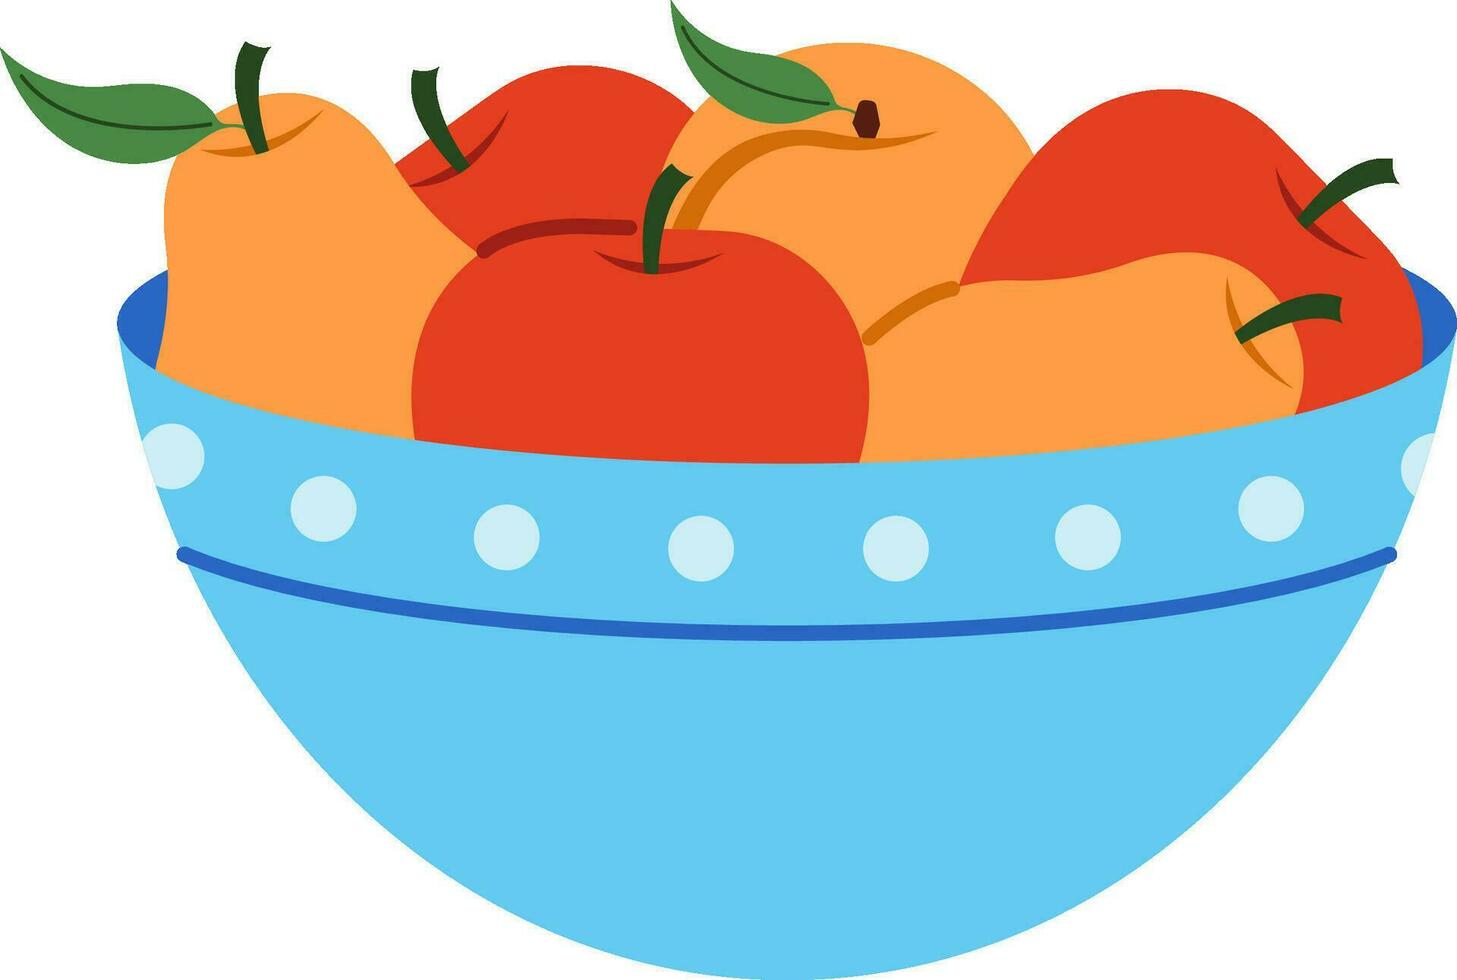 süß Schüssel mit Früchte, Birnen, Pfirsiche, Äpfel. vektor